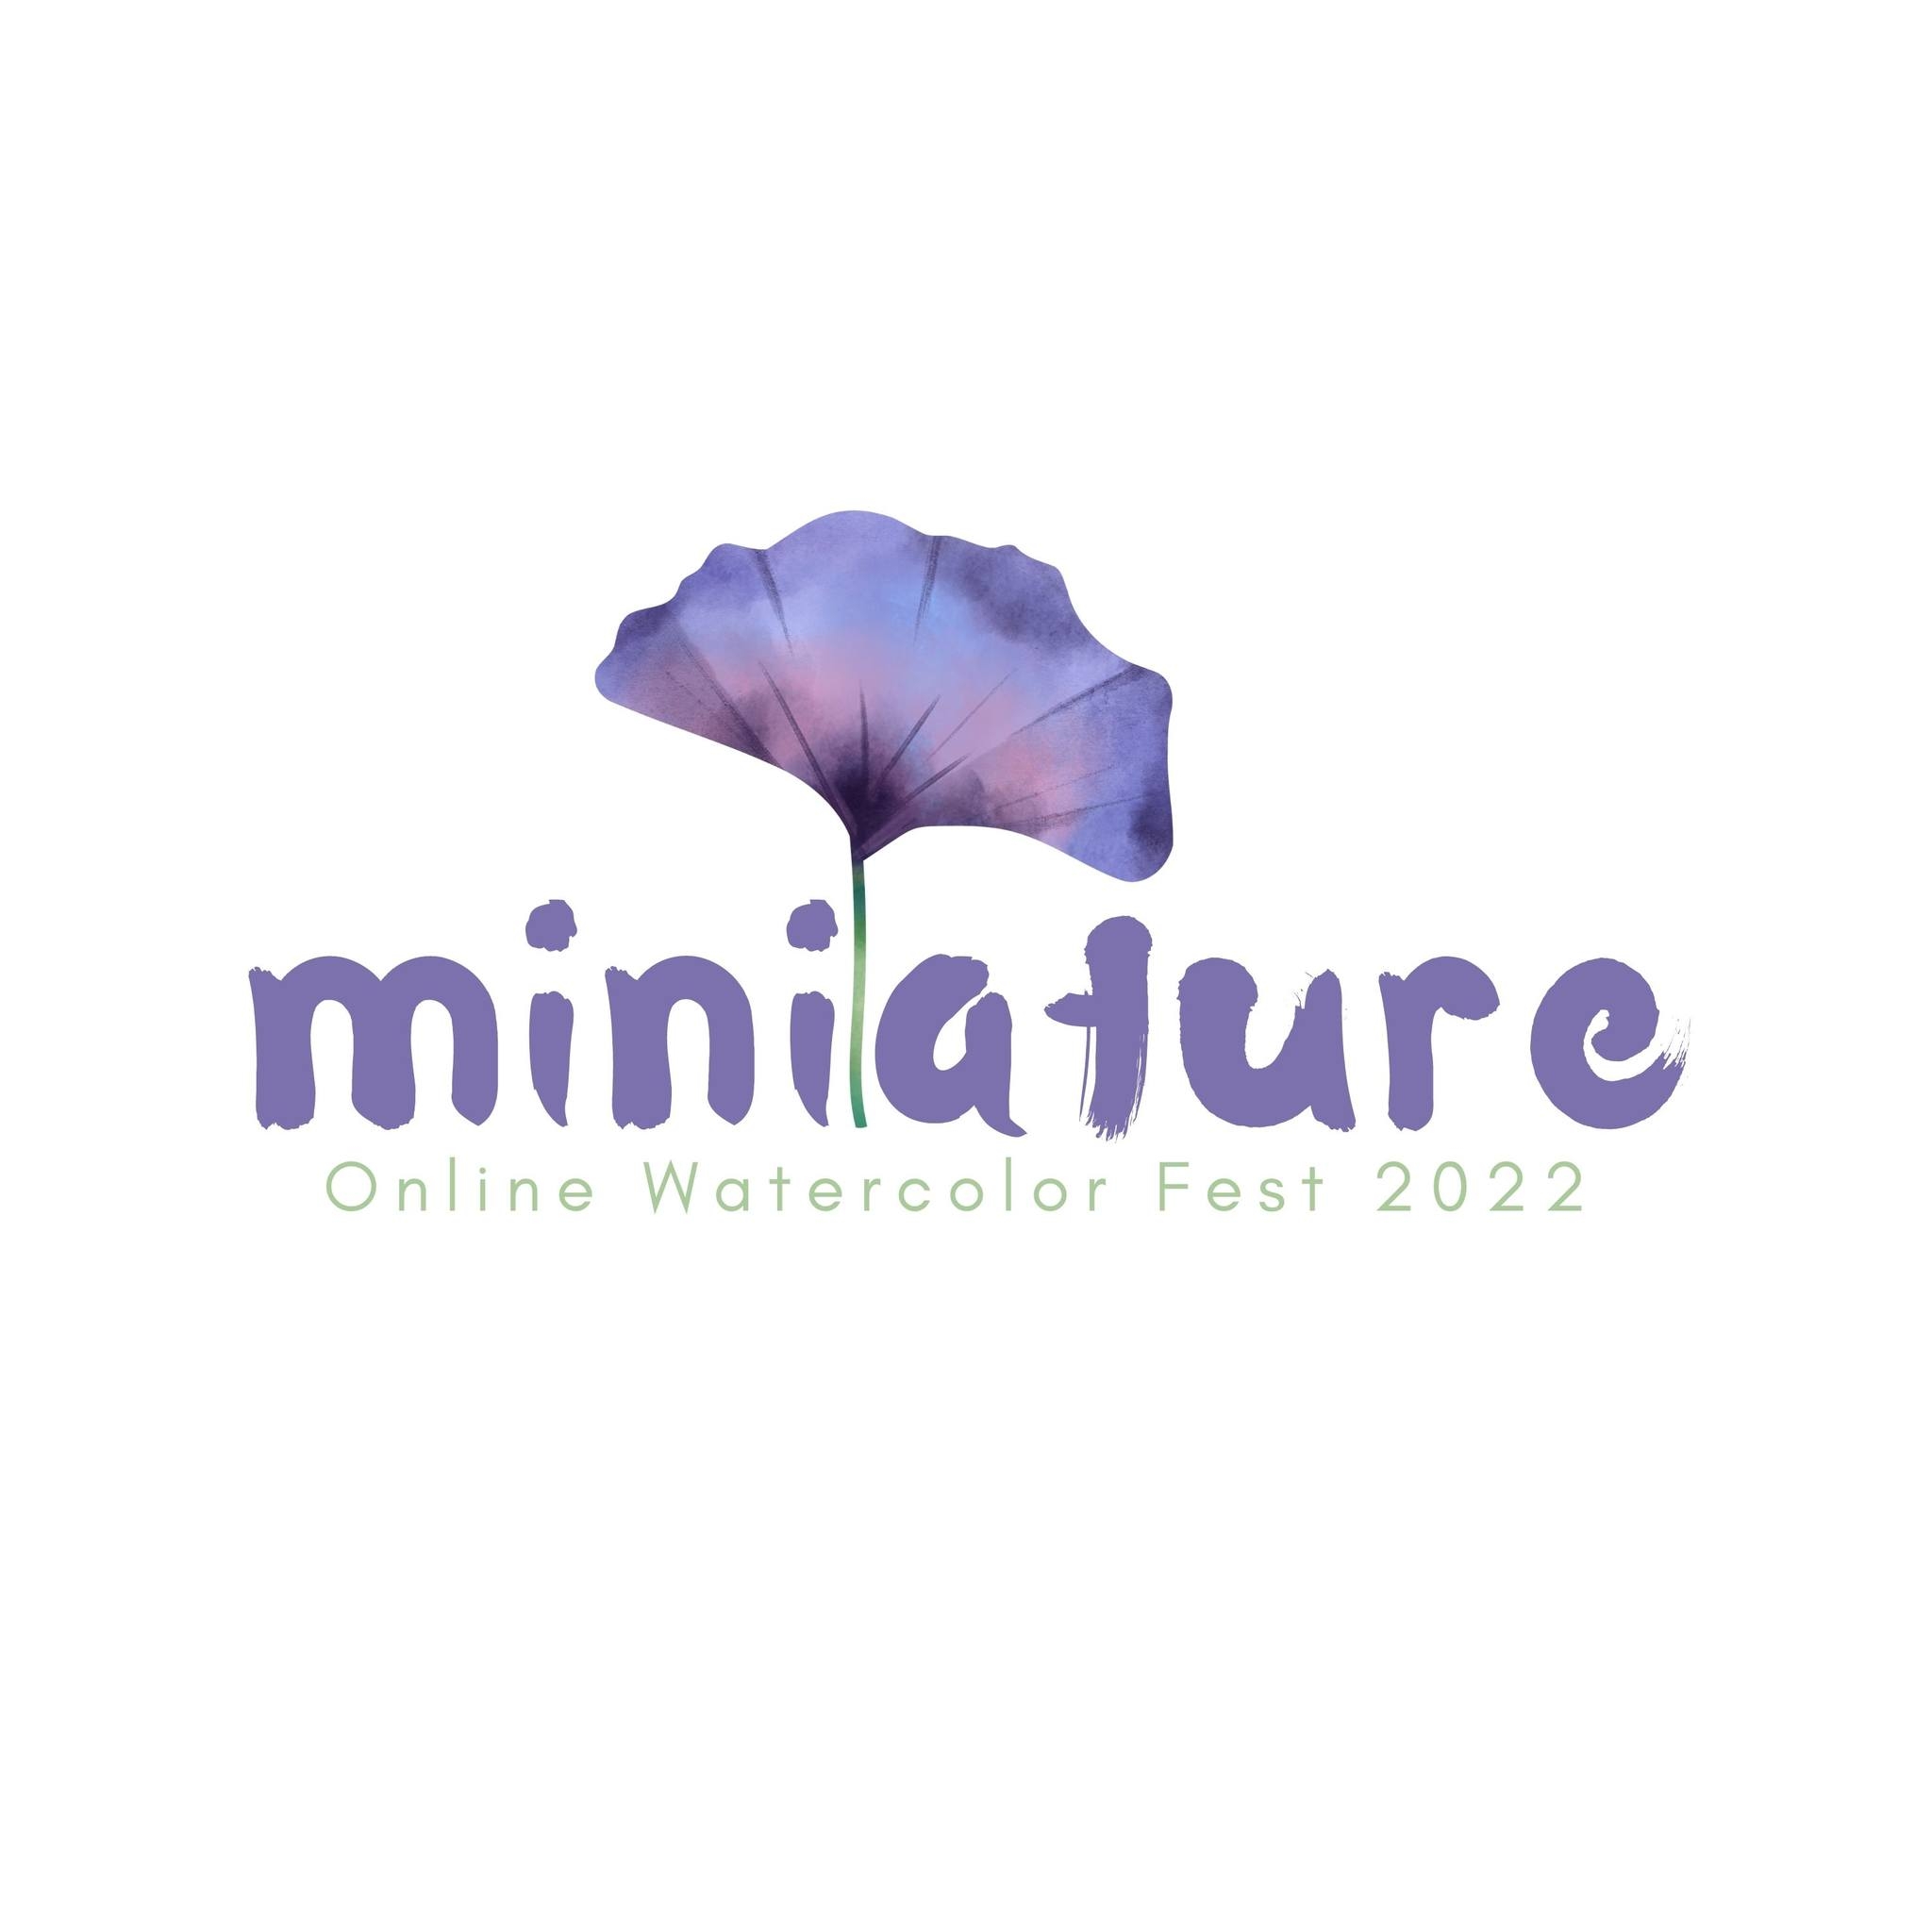 ขอแสดงความยินดีกับอาจารย์สาขาวิชาการออกแบบภายใน เนื่องในโอกาสได้รับการคัดเลือกเข้าร่วมแสดงผลงานสร้างสรรค์จิตรกรรมสีน้ำระดับนานาชาติ Online Miniature Watercolor Fest 2022